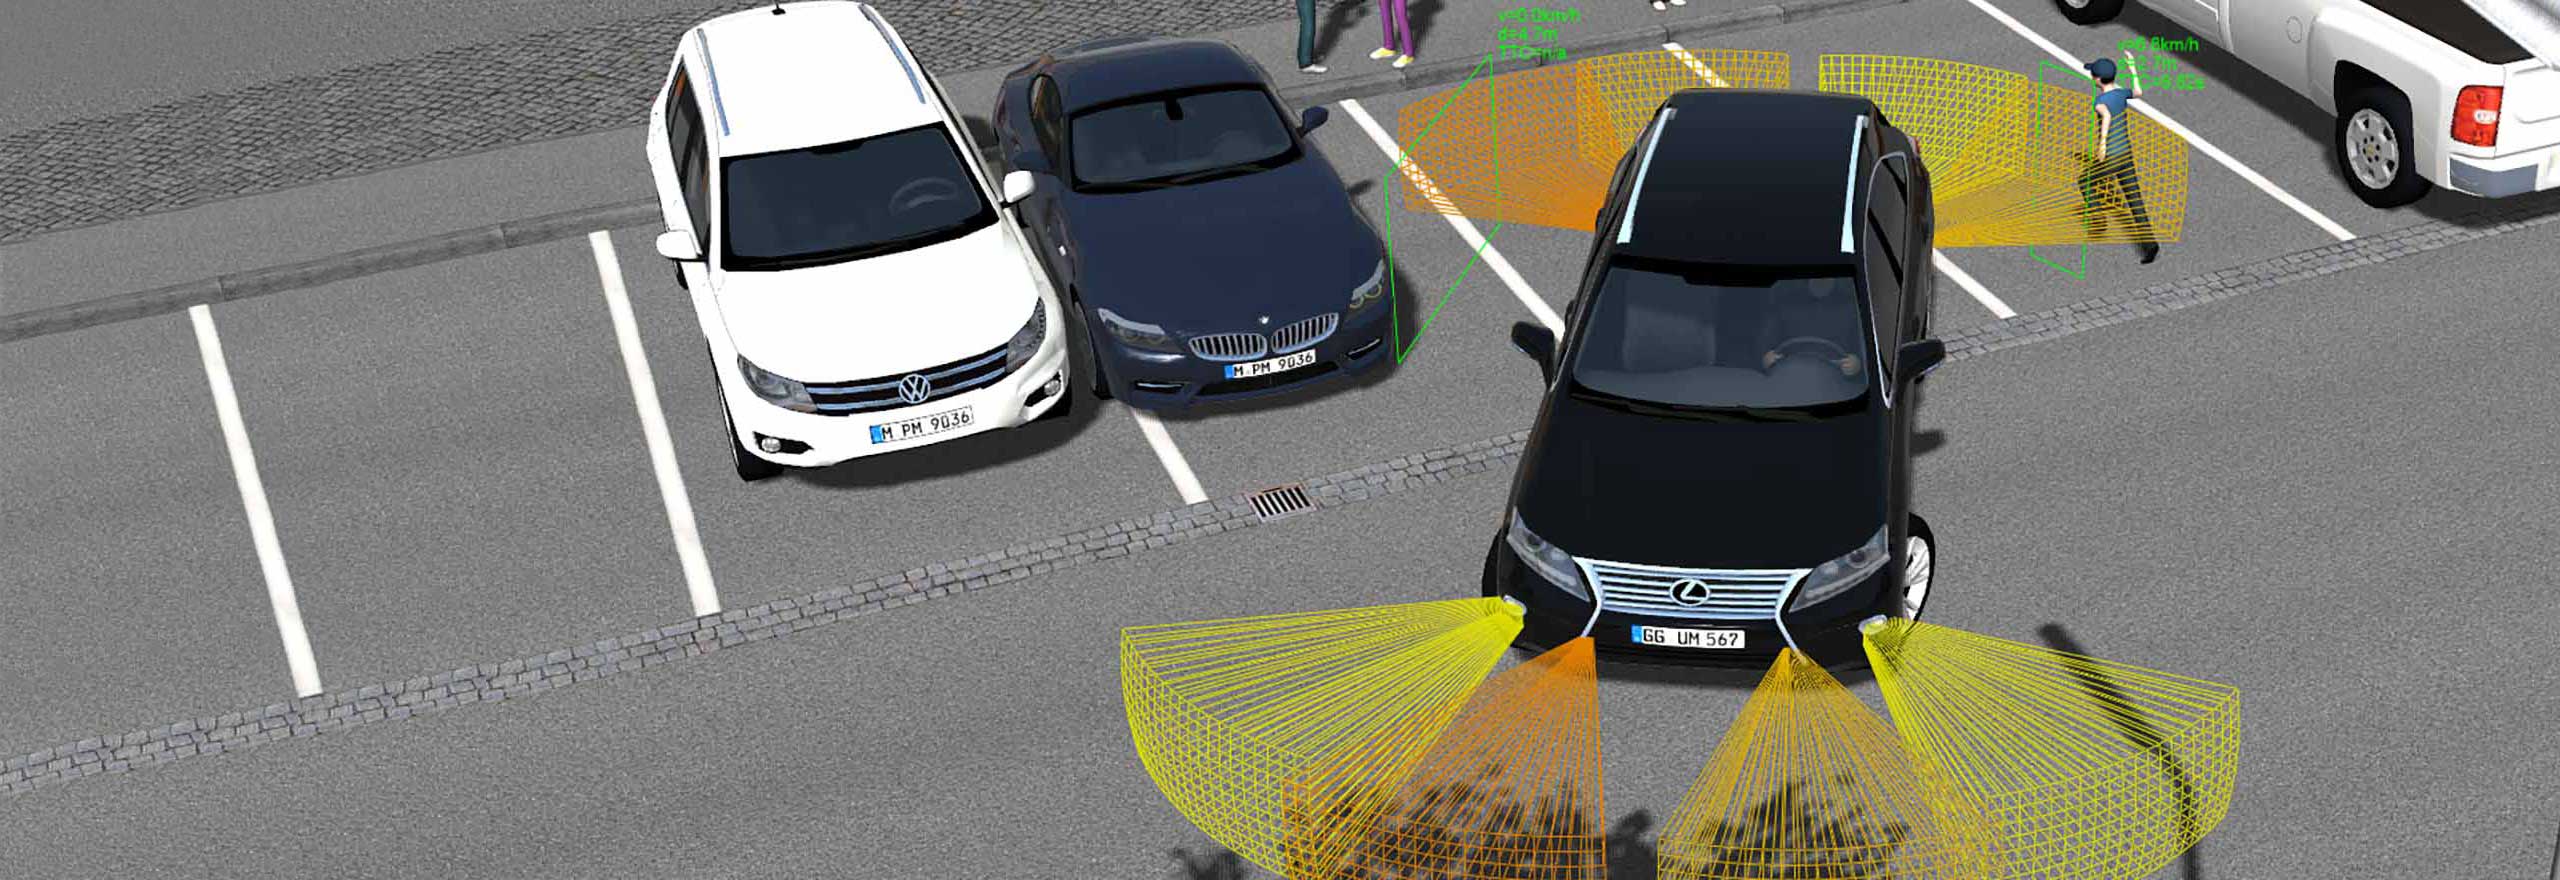 Hexagonの自律および ADAS シミュレーションを使用した駐車場のシミュレーション 